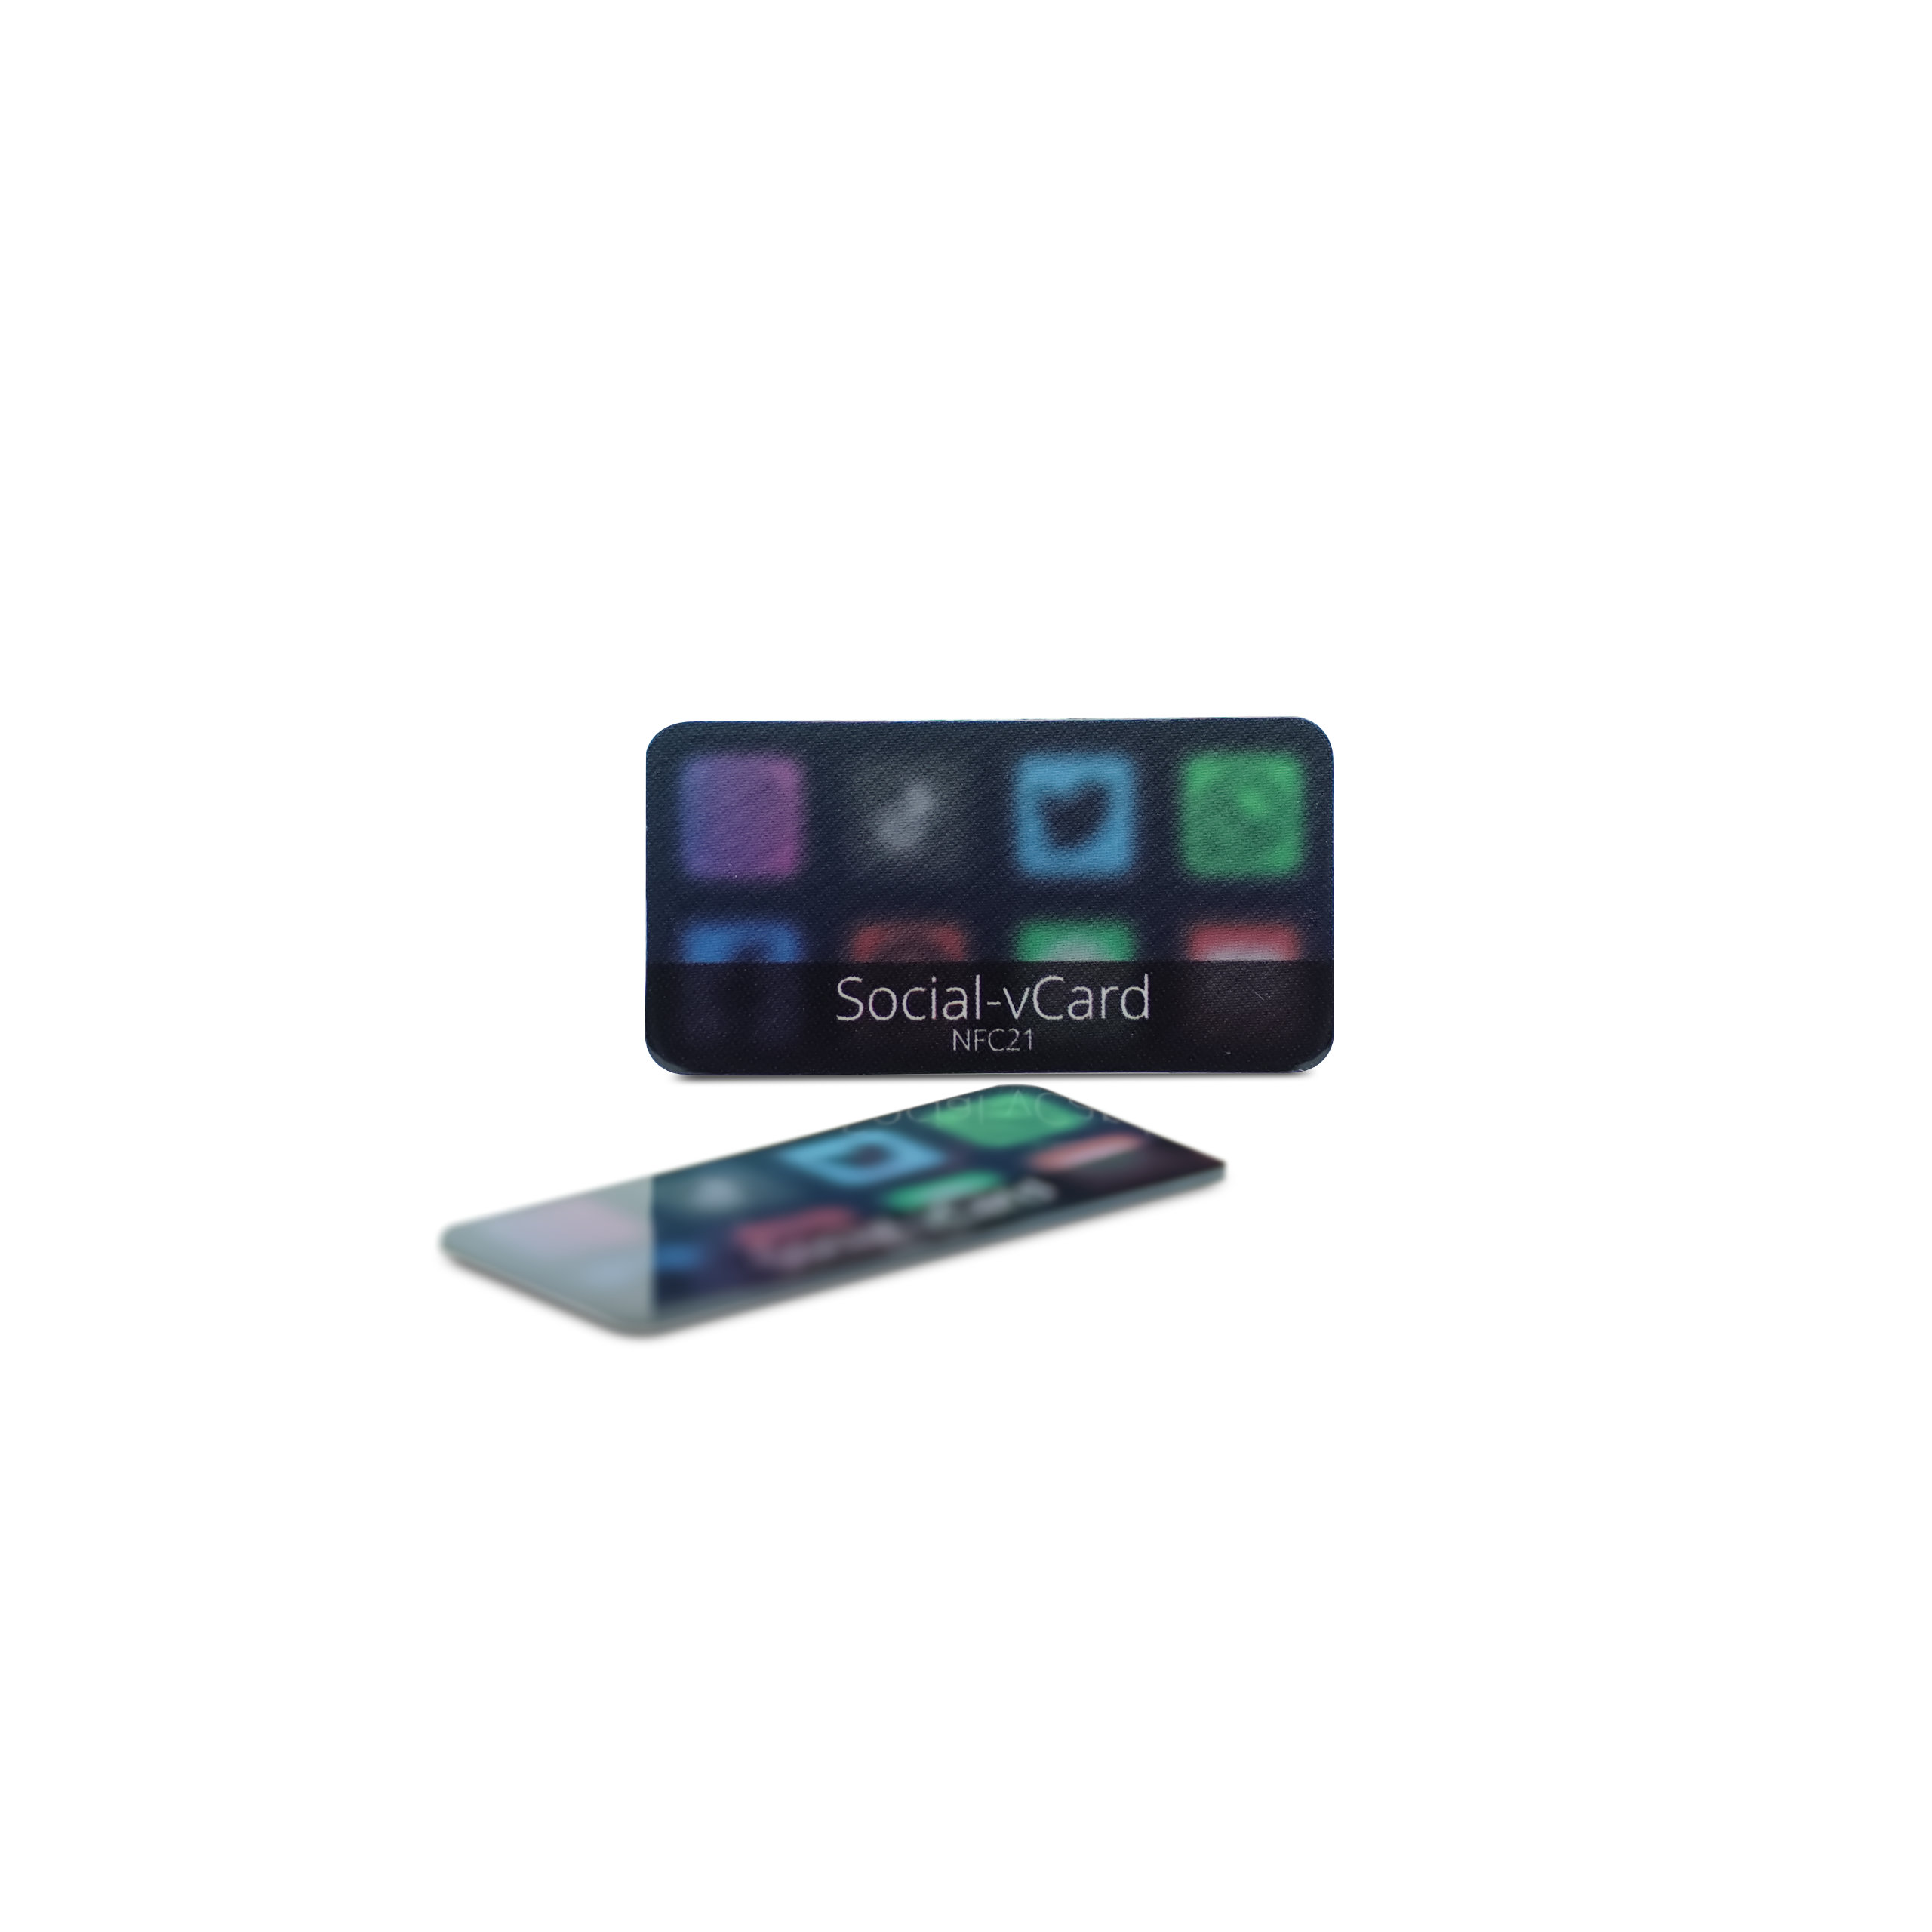 Social-vCard Dark - Digitaler Social Media Sticker - PET - 35 x 18 mm - schwarz